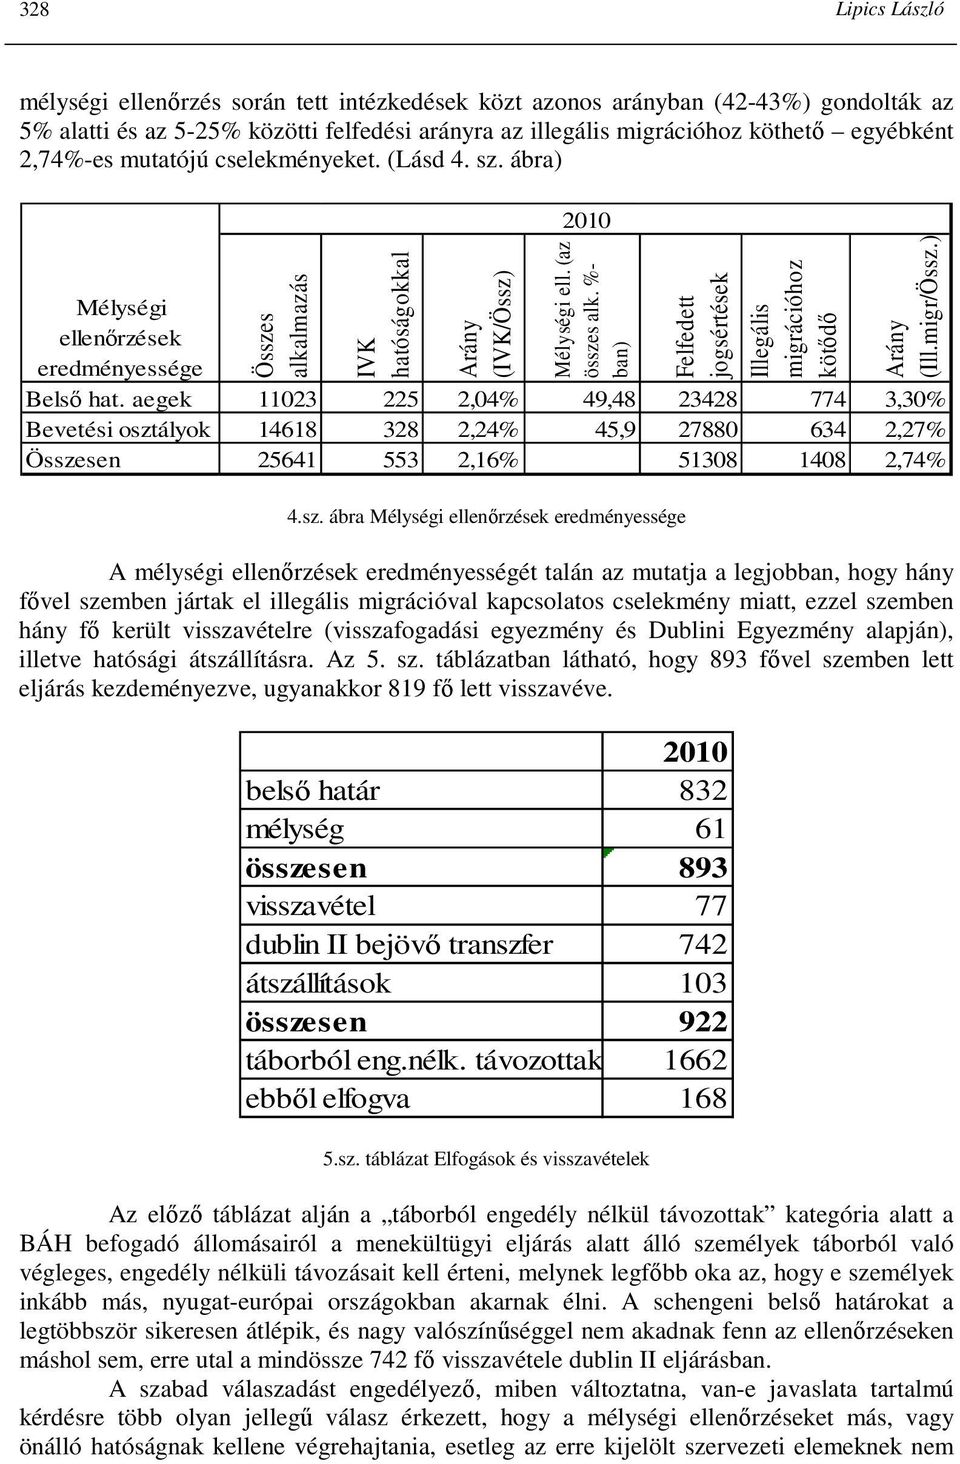 %- ban) Felfedett jogsértések Illegális migrációhoz kötıdı Arány (Ill.migr/Össz.) eredményessége Belsı hat.